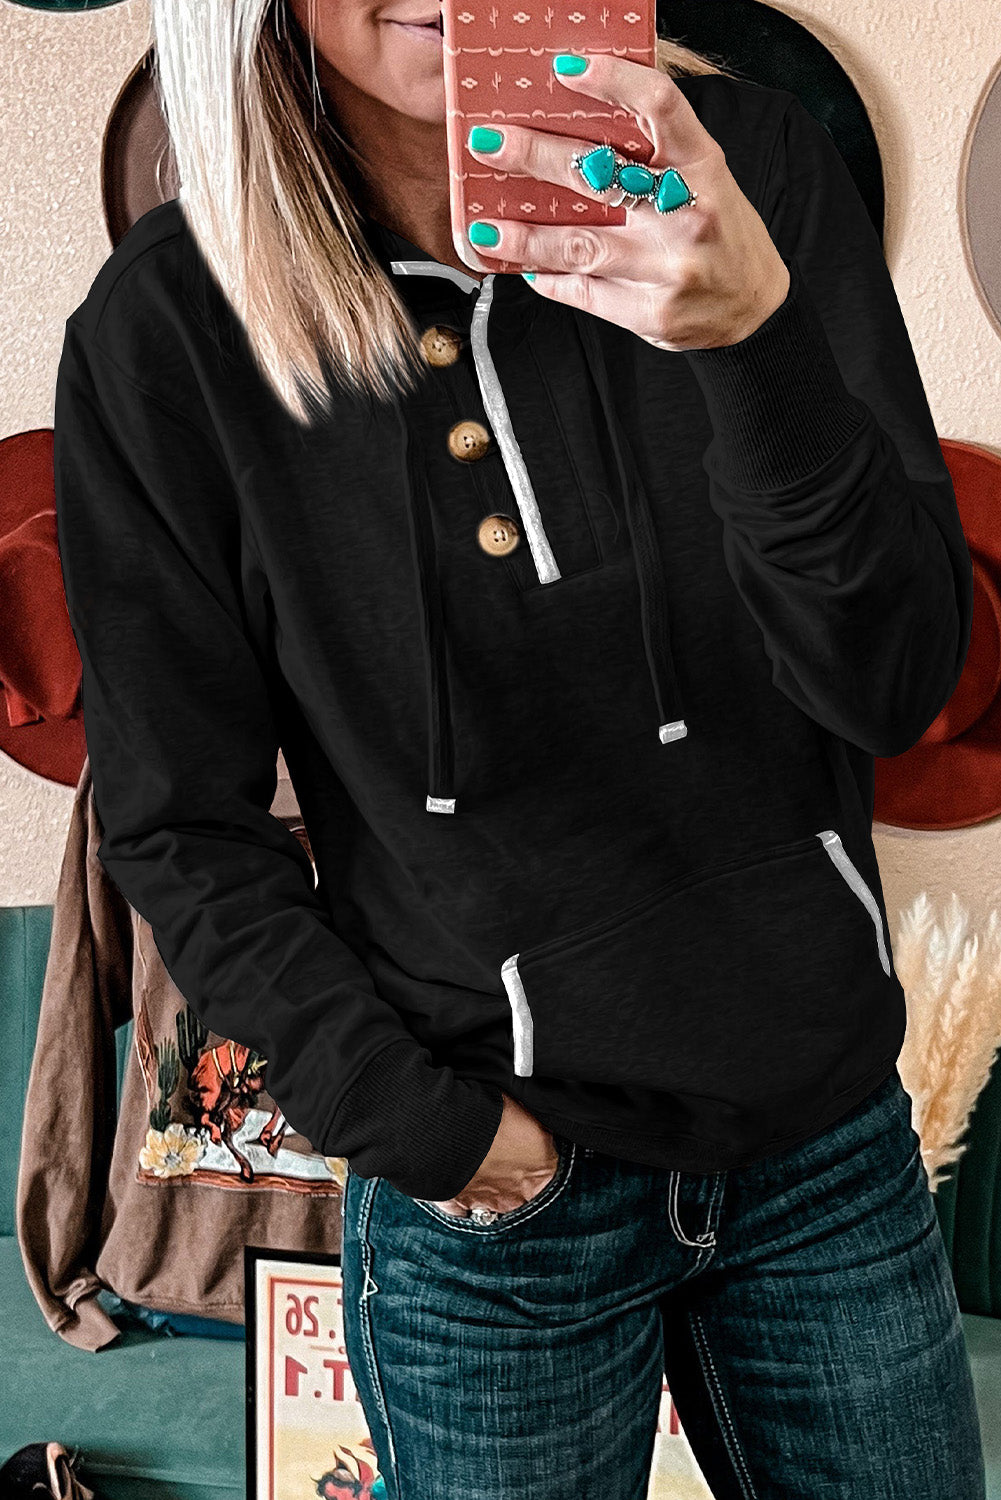 Crna majica s kapuljačom s kapuljačom u obliku klokana i džepa